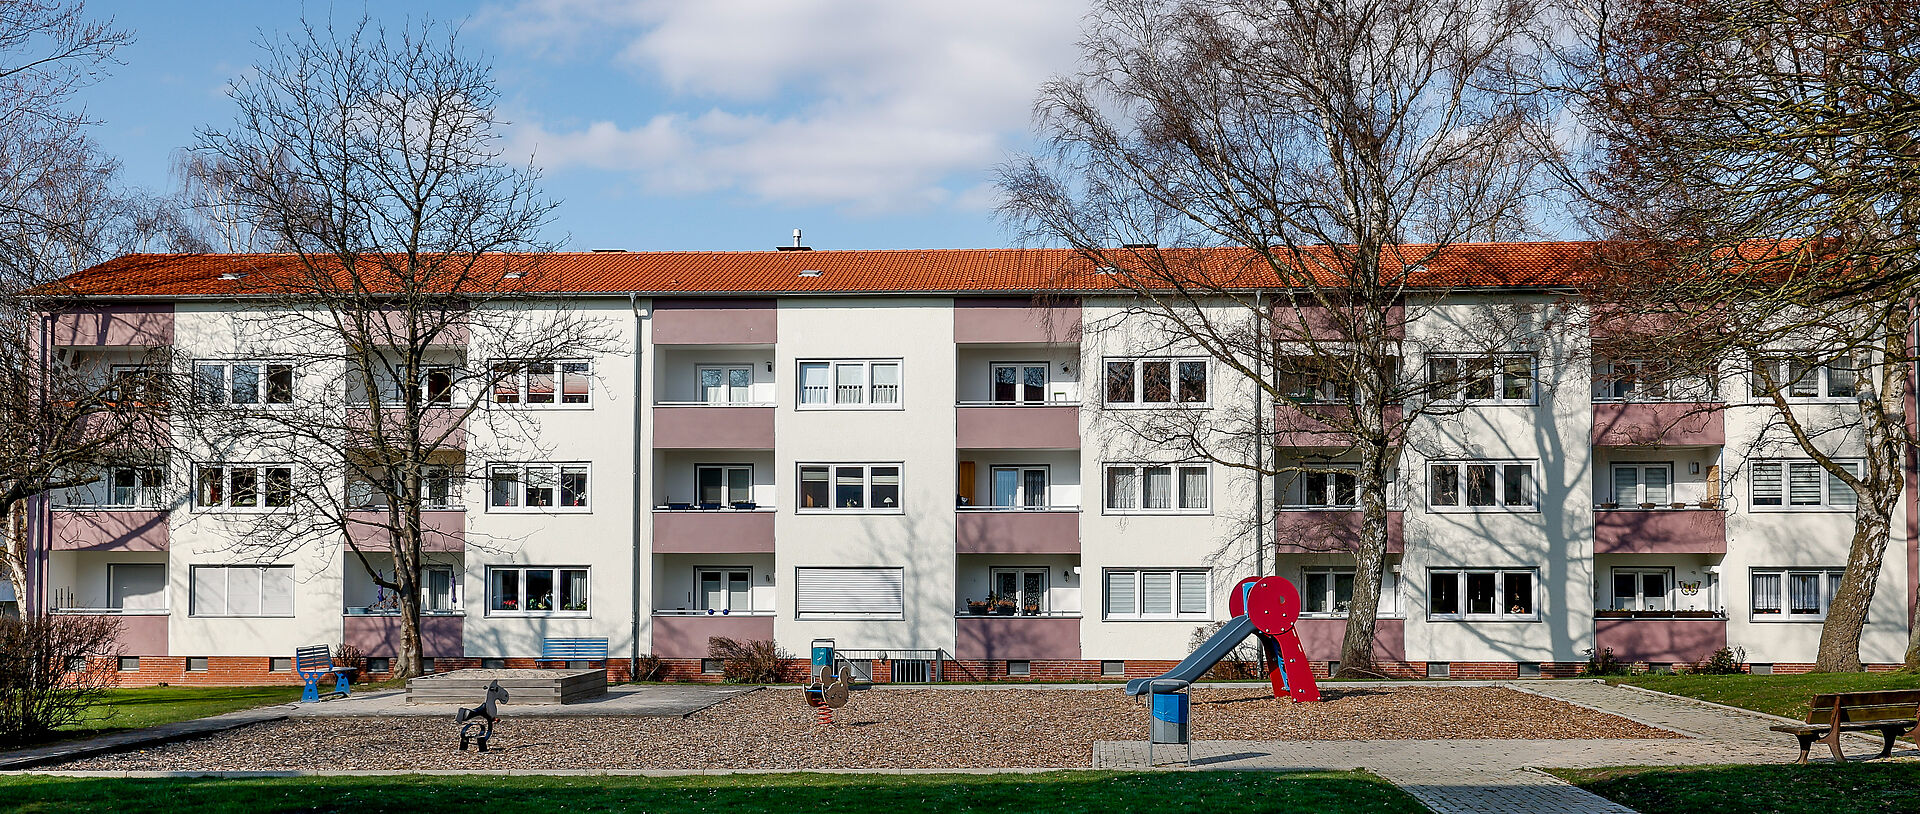 Häuserfront in Dortmund